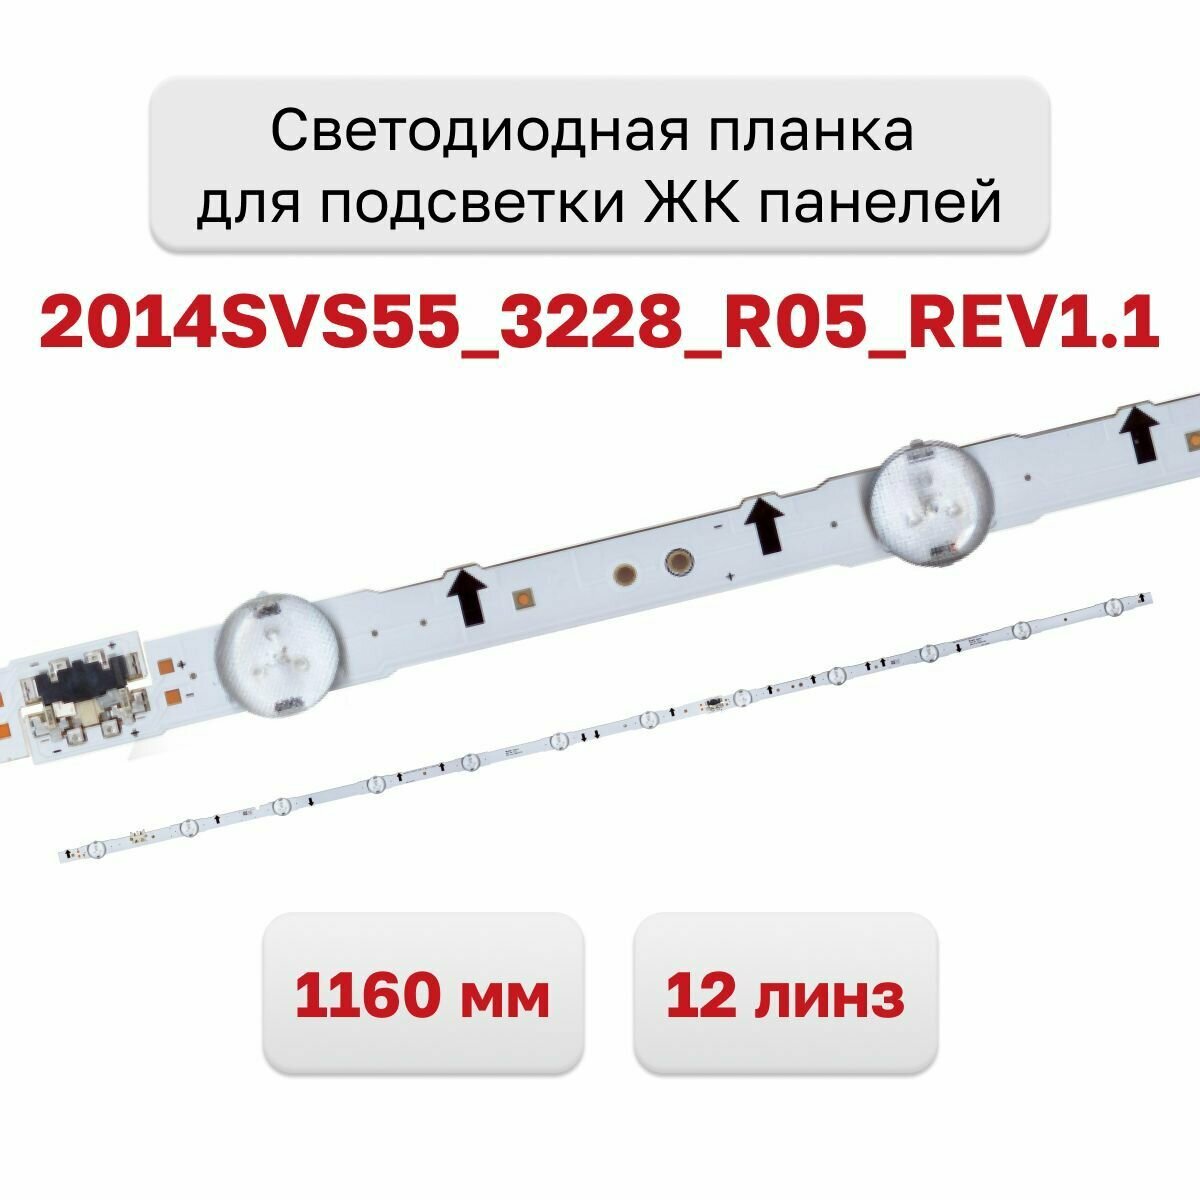 Светодиодная планка для подсветки ЖК панелей 2014SVS55_3228_R05_REV1.1 1160 мм. 12 линз